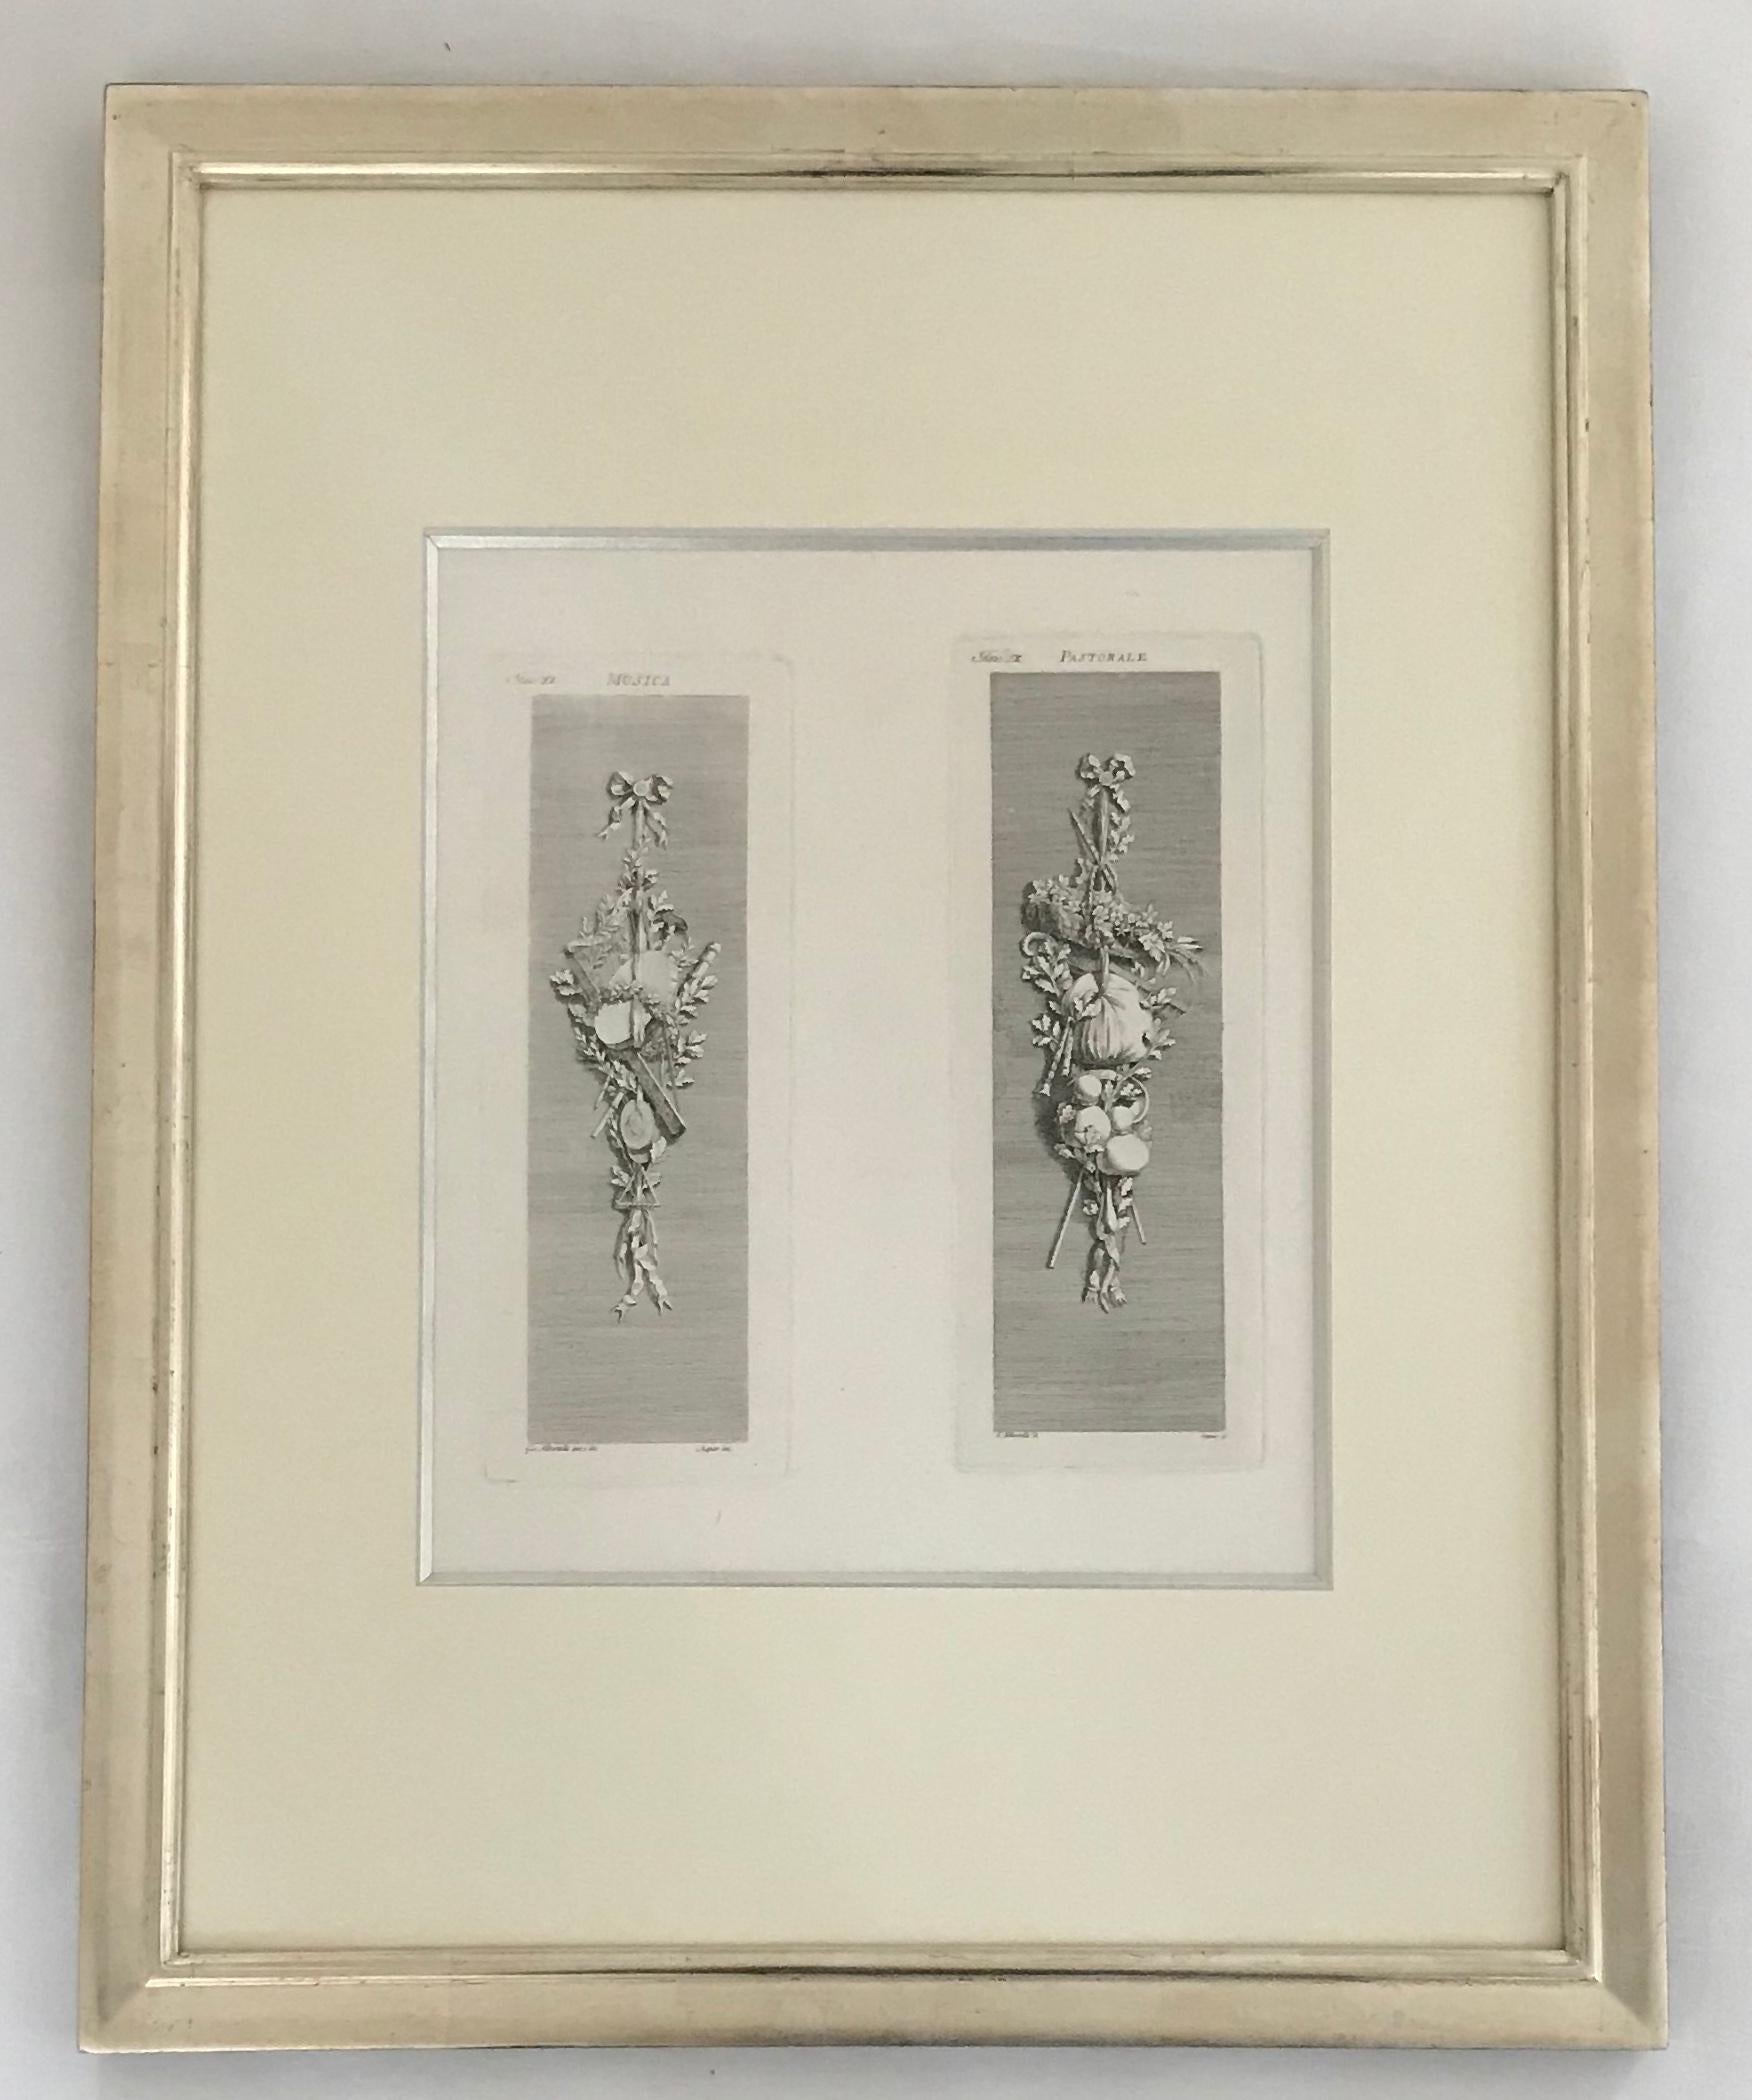 Allegorie der vier Jahreszeiten. Ein Paar Kupferstiche.
Diese Gravuren sind in mit Weißgold überzogene französische Rahmen eingefasst.
Aus der 1782 in Mailand erschienenen Publikation.
